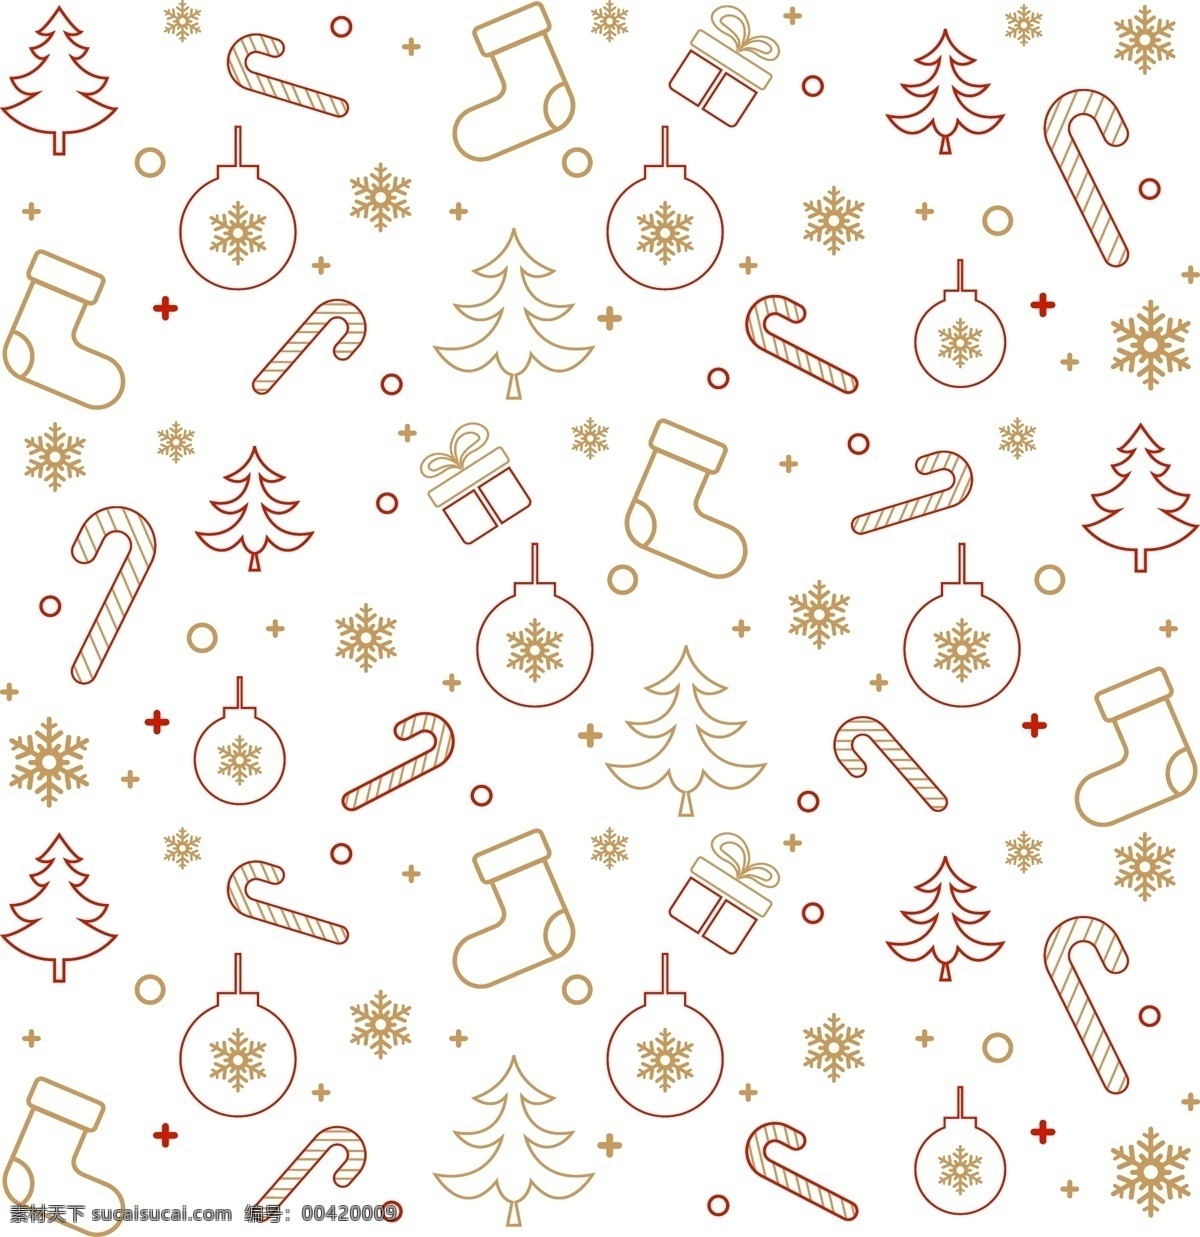 矢量 圣诞节 底纹 线描 雪花 手杖 圣诞节底纹 线描圣诞树 长筒袜 好看底纹 精致雪花 灯 底纹边框 其他素材